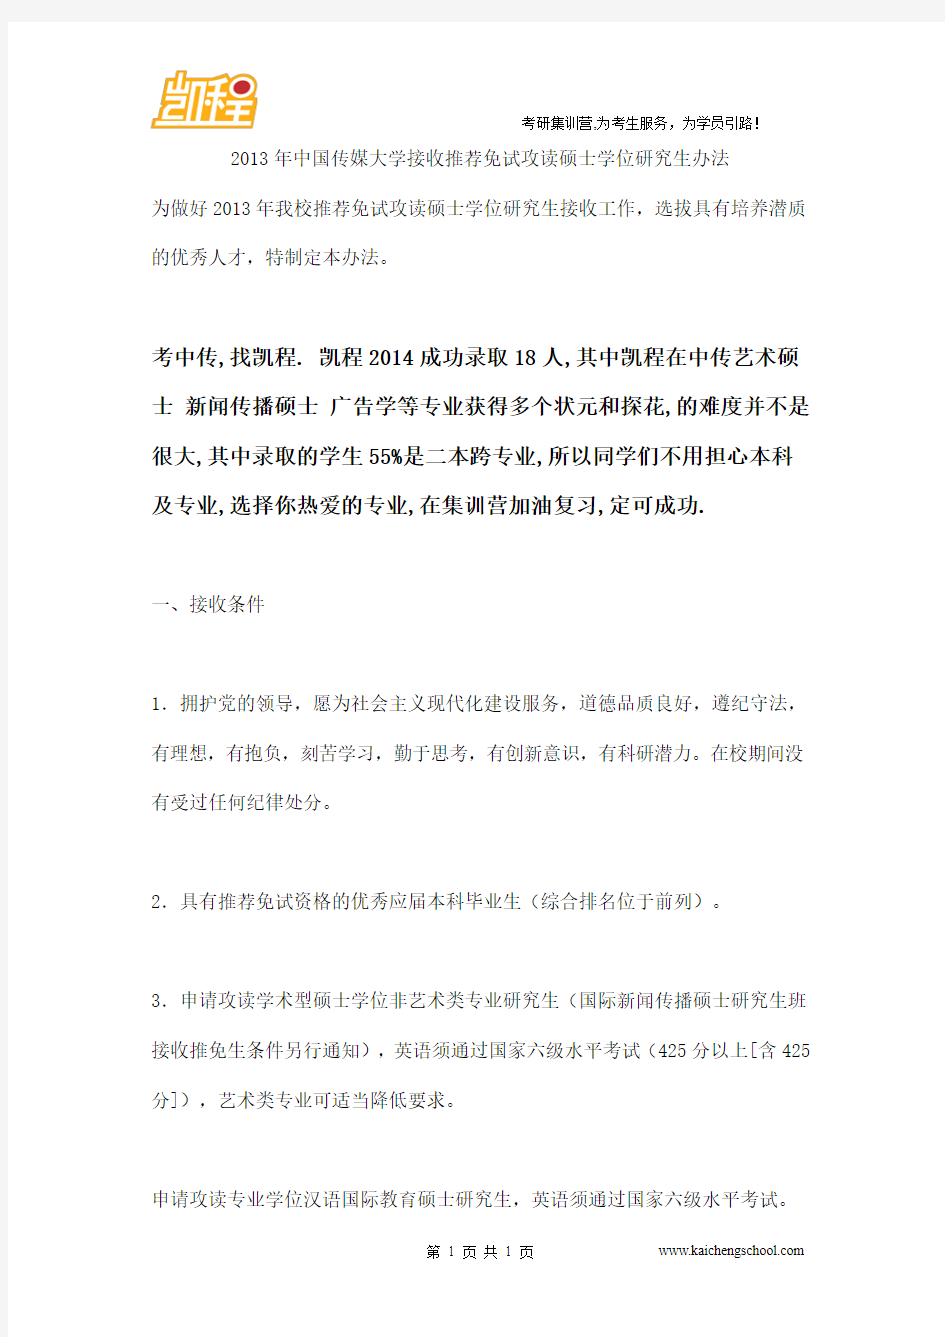 2013年中国传媒大学接收推荐免试攻读硕士学位研究生办法